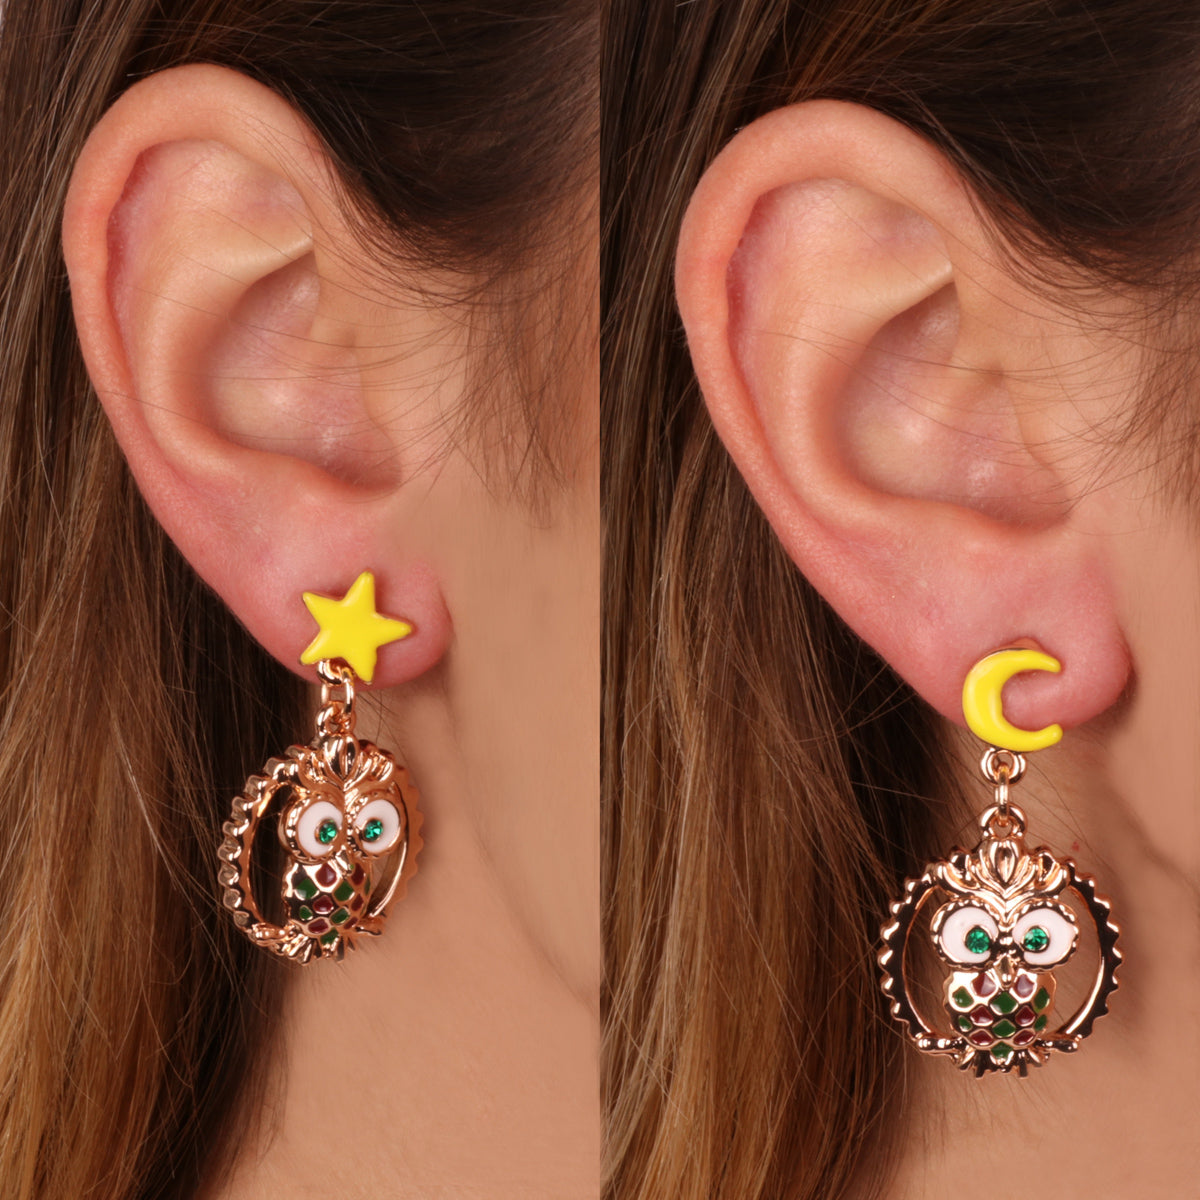 Metal earrings with owl